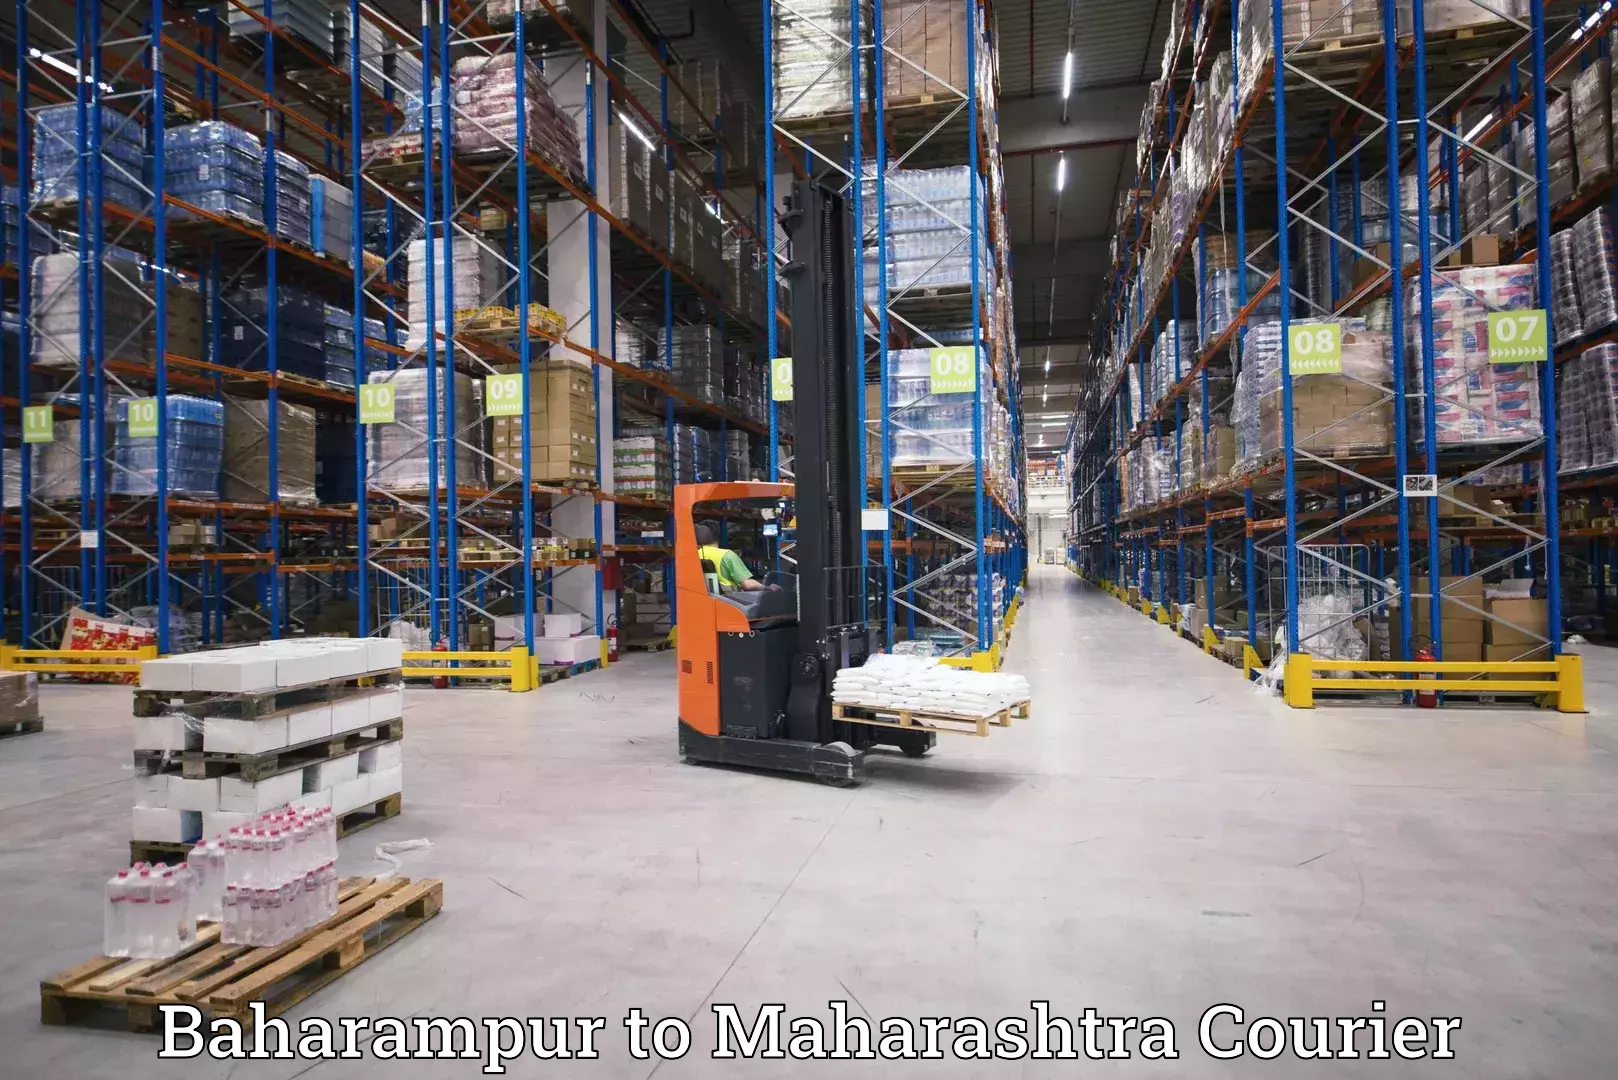 High-capacity shipping options Baharampur to Chinchbunder